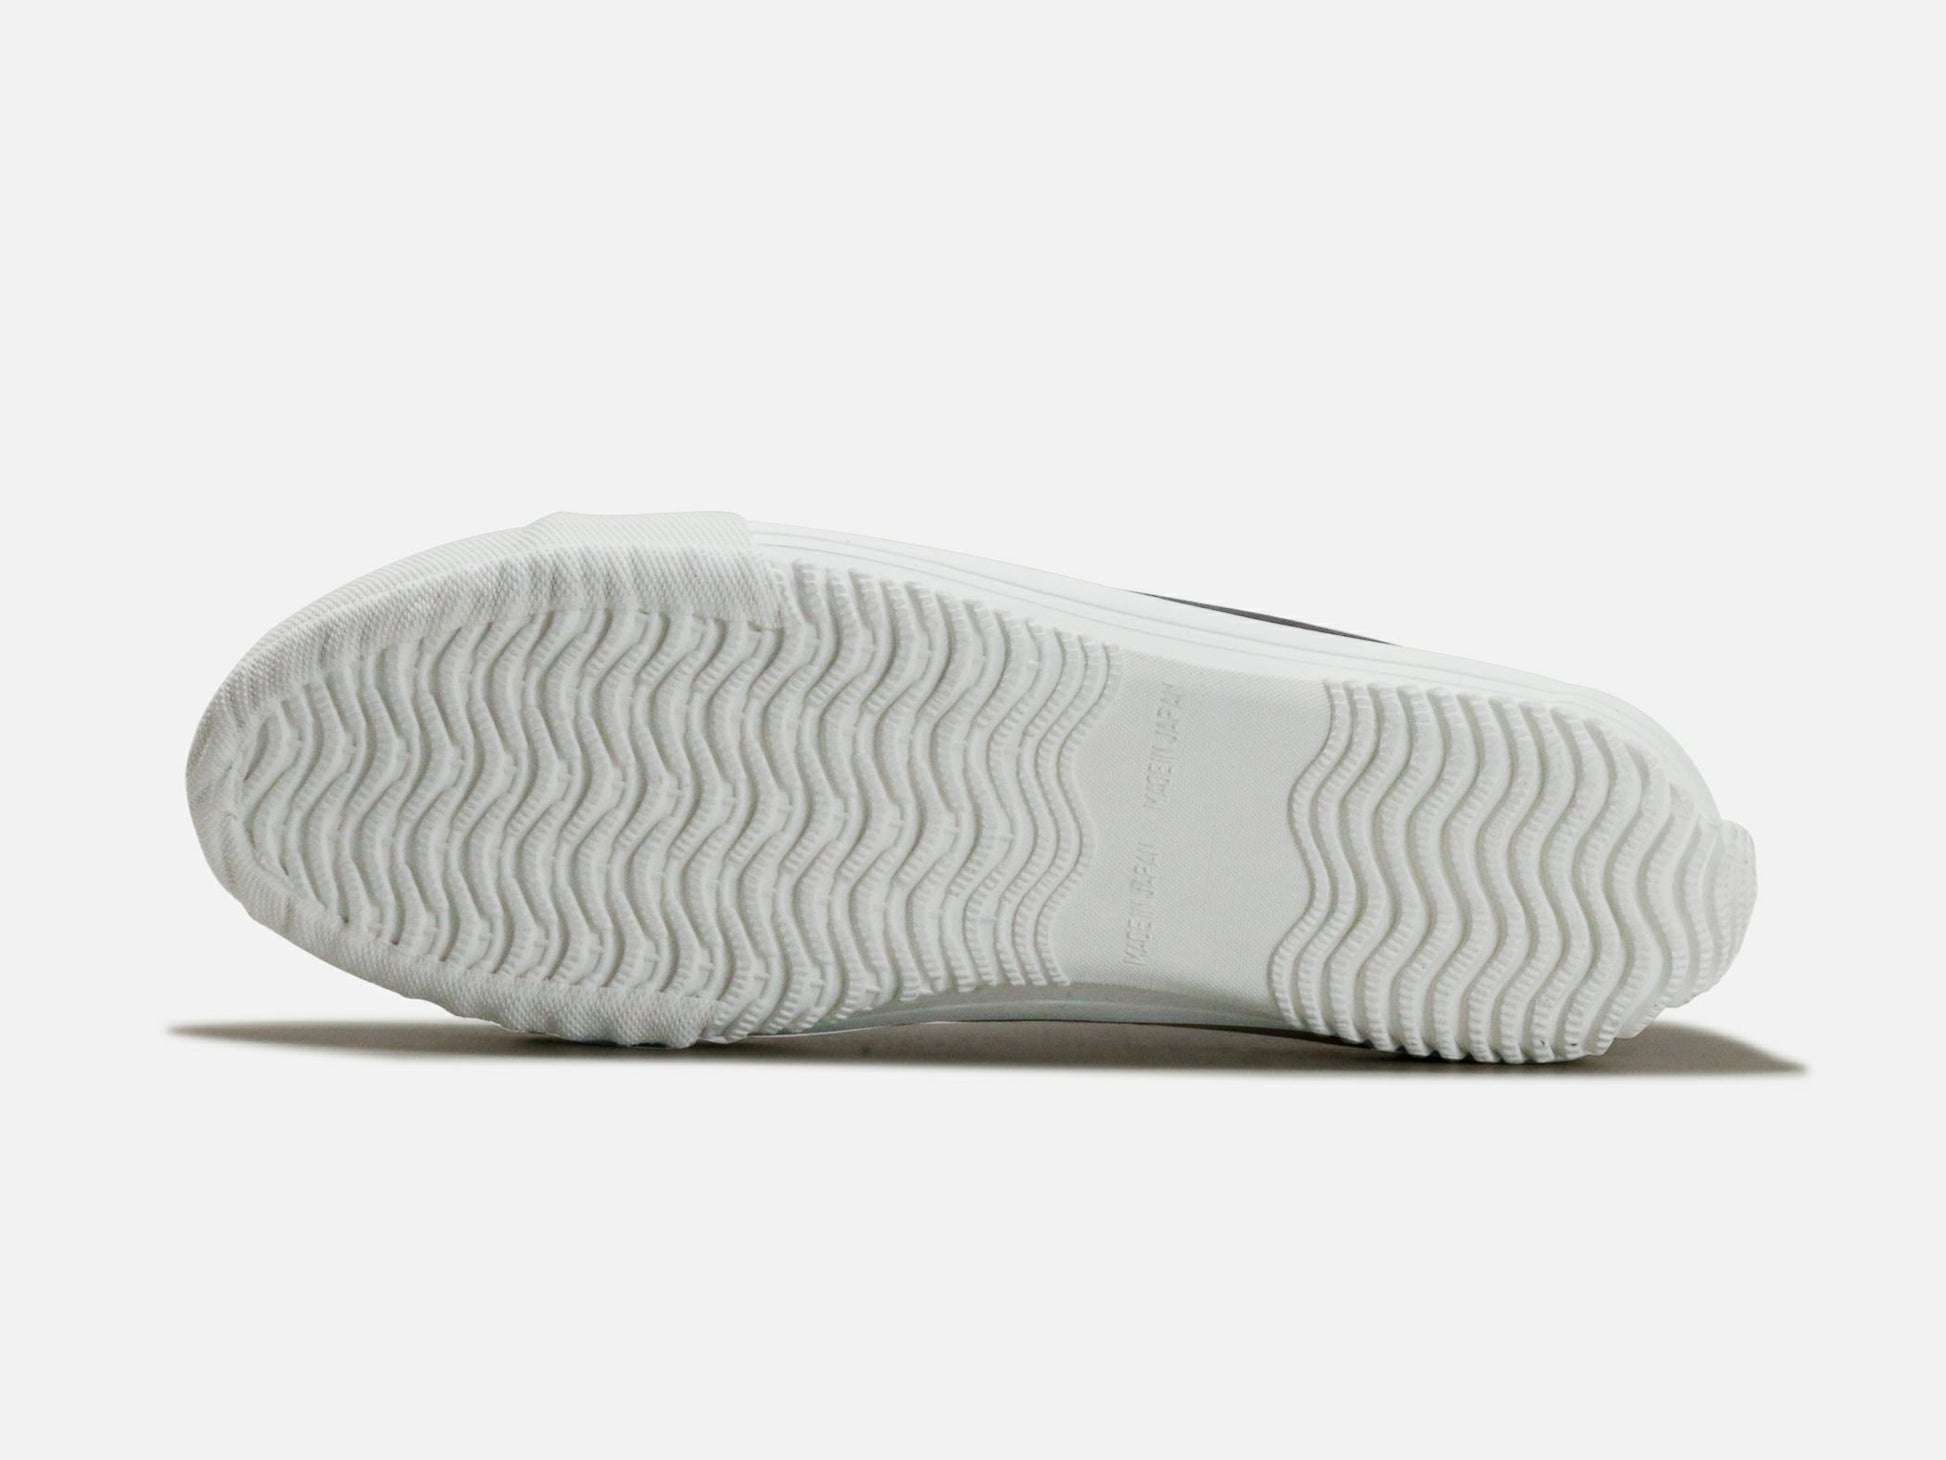 SPINGLE MOVEのスニーカー「SPM-356 Black」の靴底の商品画像